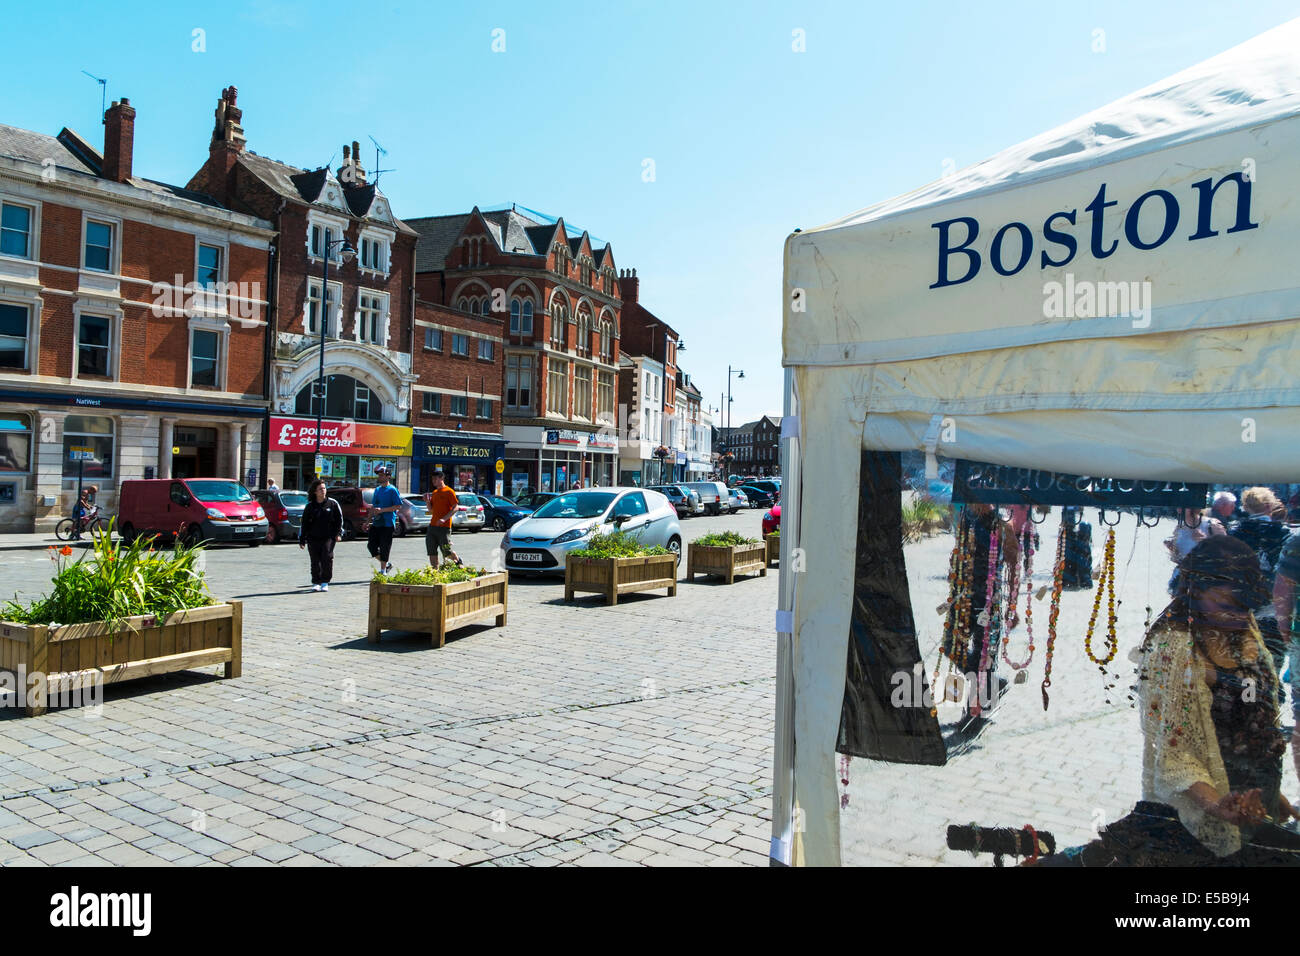 Boston-Stadt Zentrum Marktplatz Lincolnshire UK England Geschäfte Käufer außerhalb Sommer Stockfoto